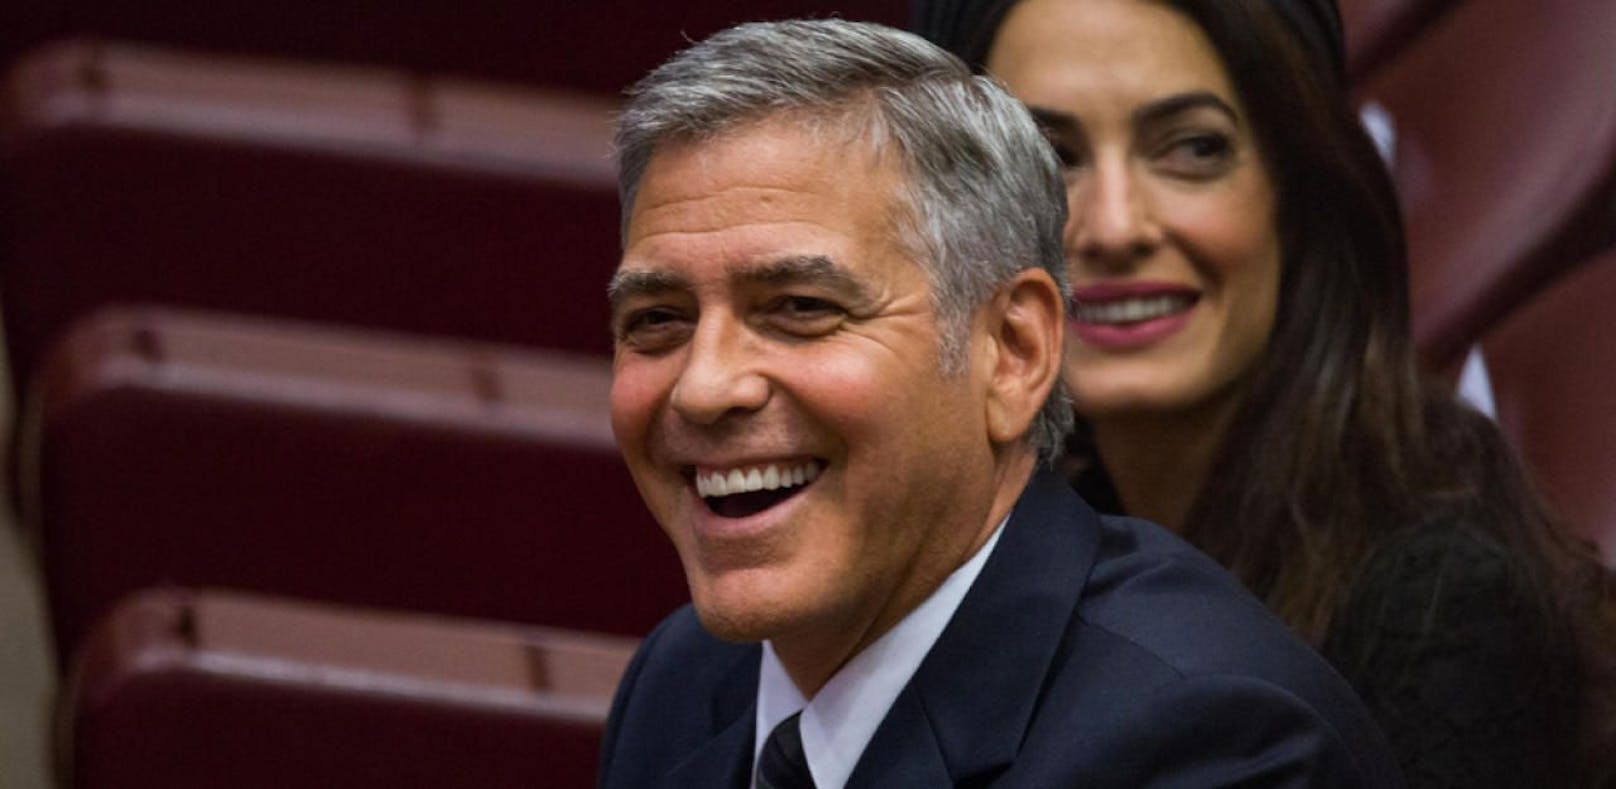 Clooney verkauft Tequila-Marke für 1 Milliarde Dollar